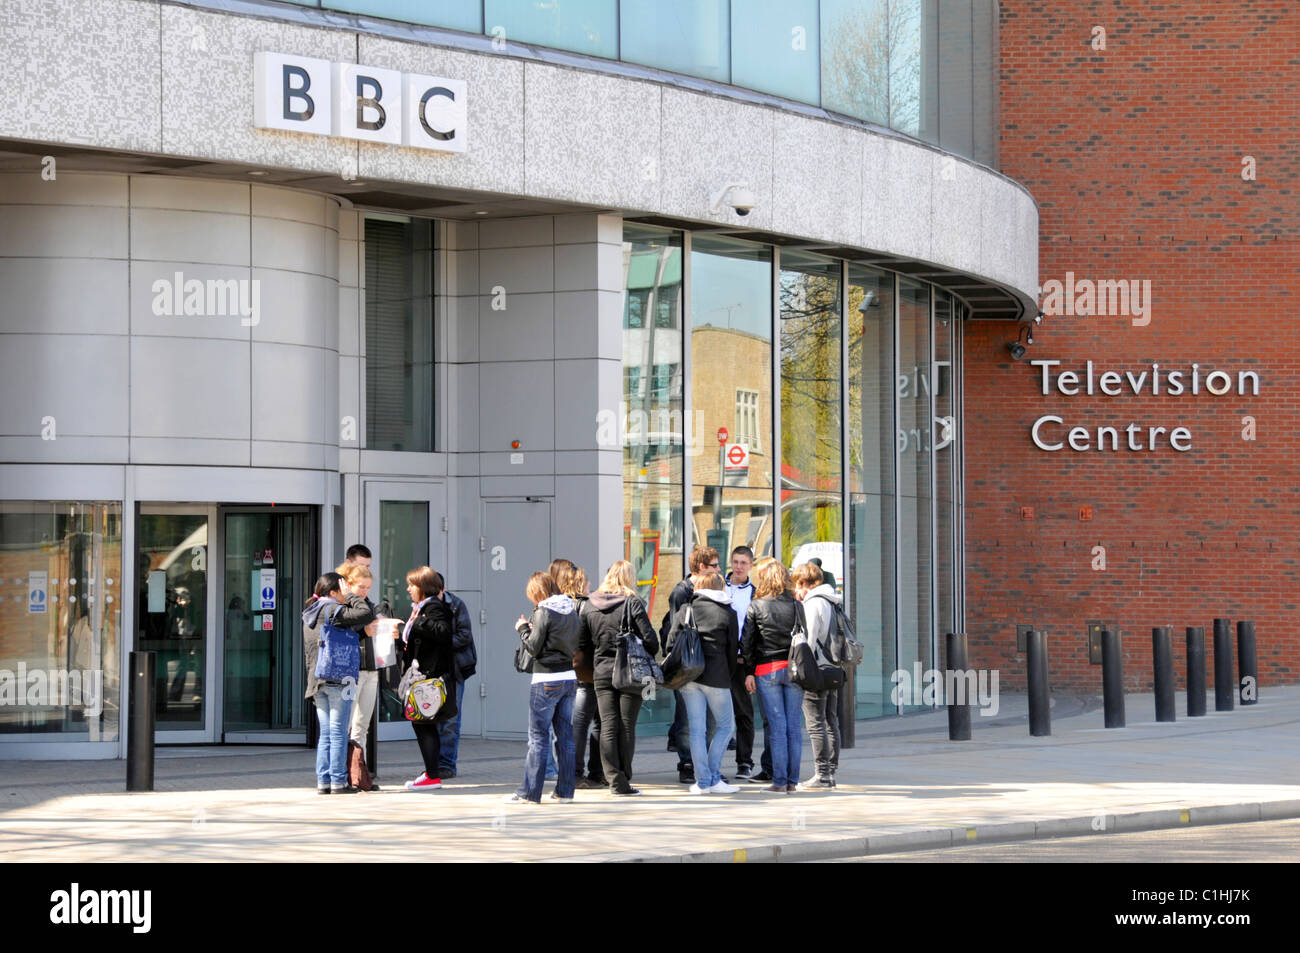 Scène de rue de Londres groupe de personnes à l'extérieur entrée de BBC Television Centre immeuble avec bornes de sécurité White City London England UK Banque D'Images